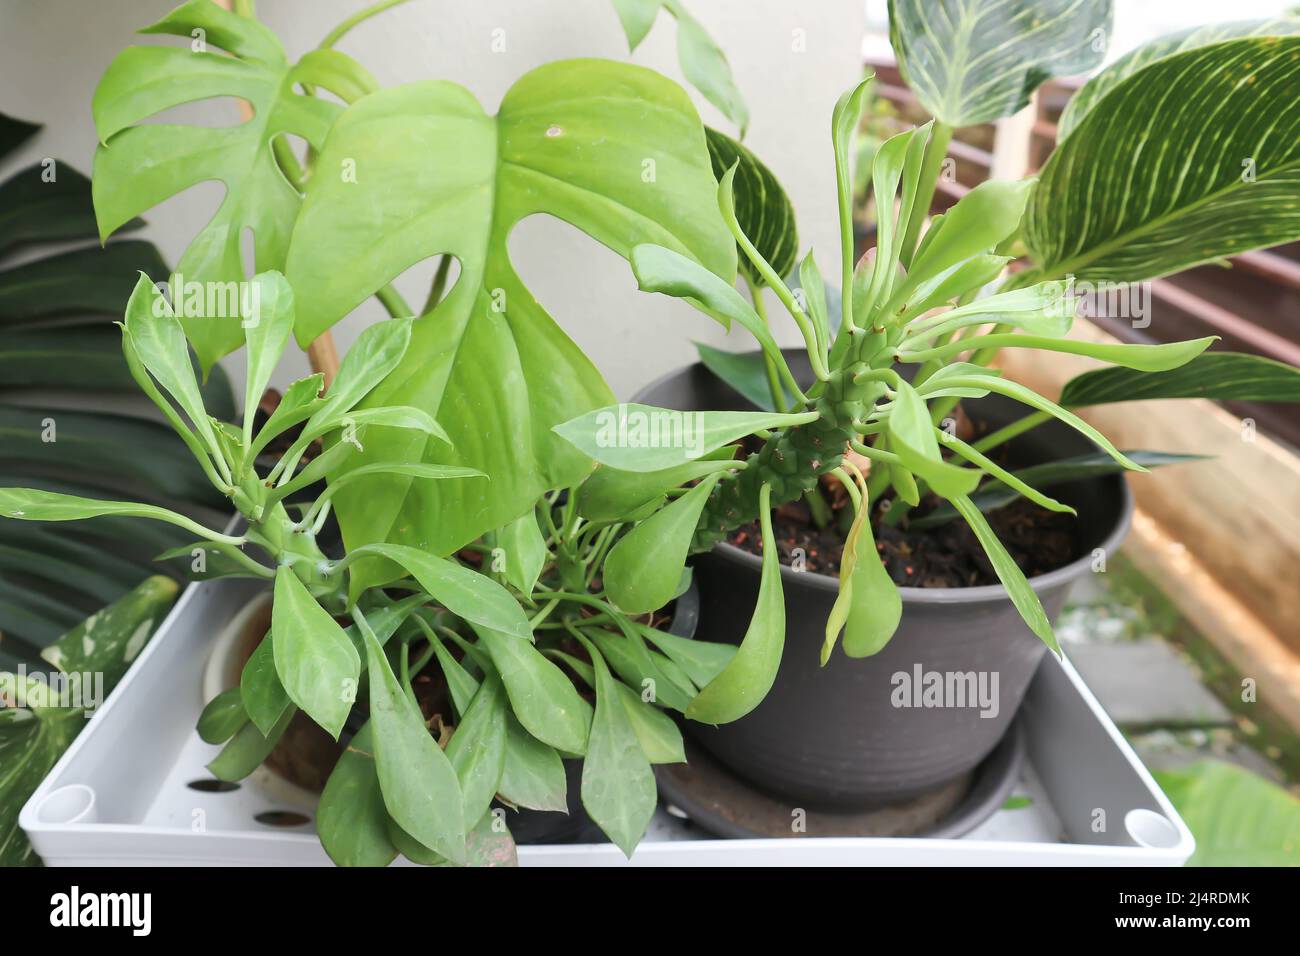 Monadenium, Euphorbia ritchiei or EUPHORBIACEAE plant Stock Photo